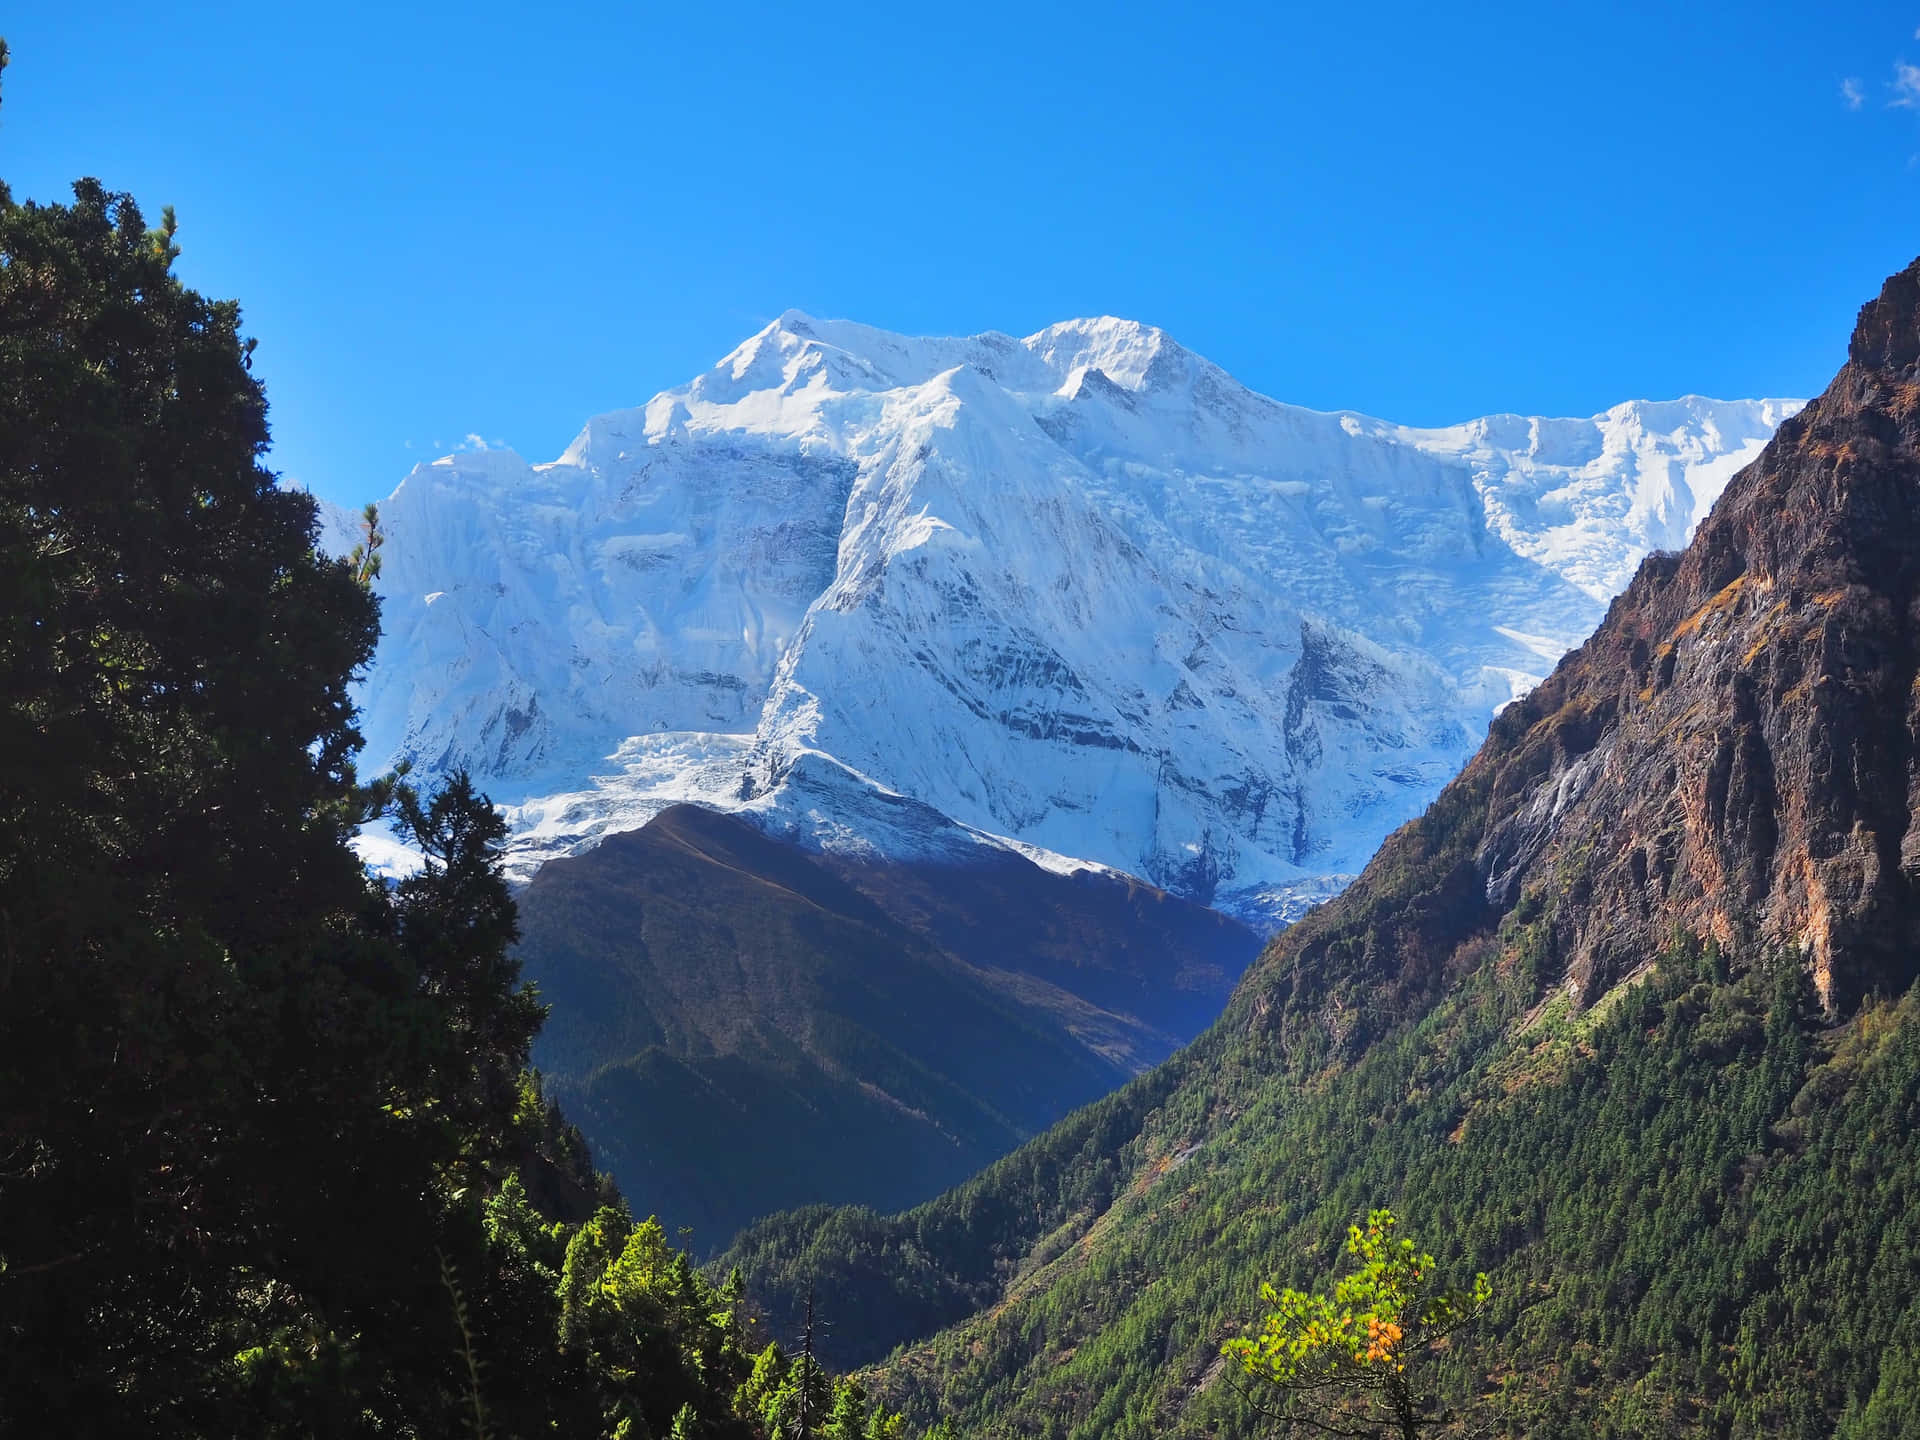 Mejorfondo De Pantalla De La Naturaleza Del Annapurna Iii En Nepal.